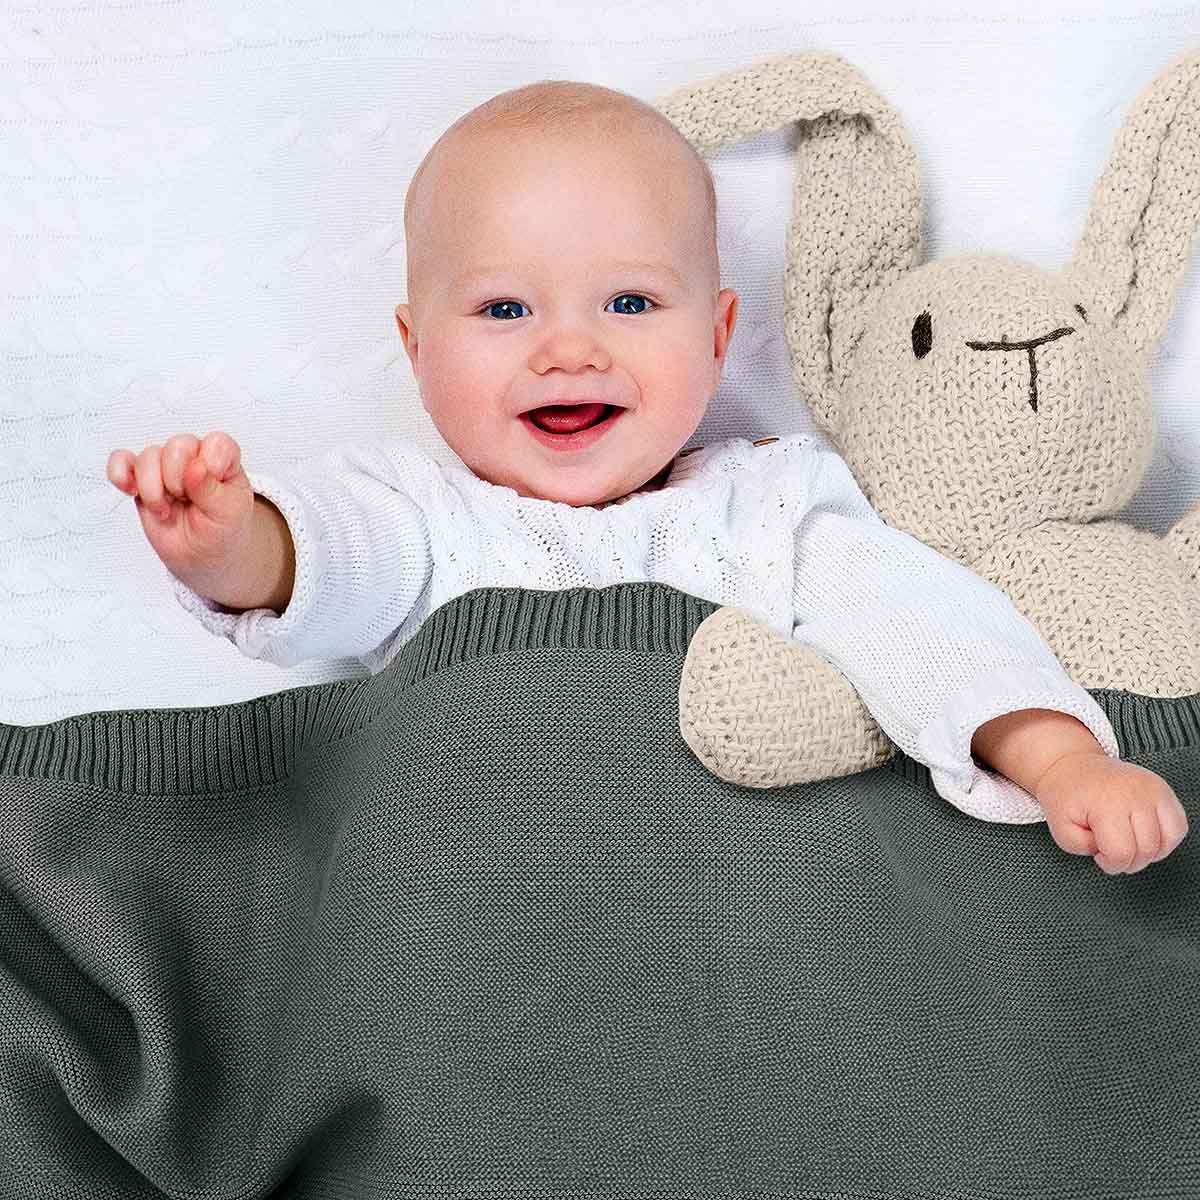 Glückliches Baby liegt im Bett, eingedeckt in dunkel-grüne Bio-Baumwolldecke. Es lächelt und winkt in die Kamera.